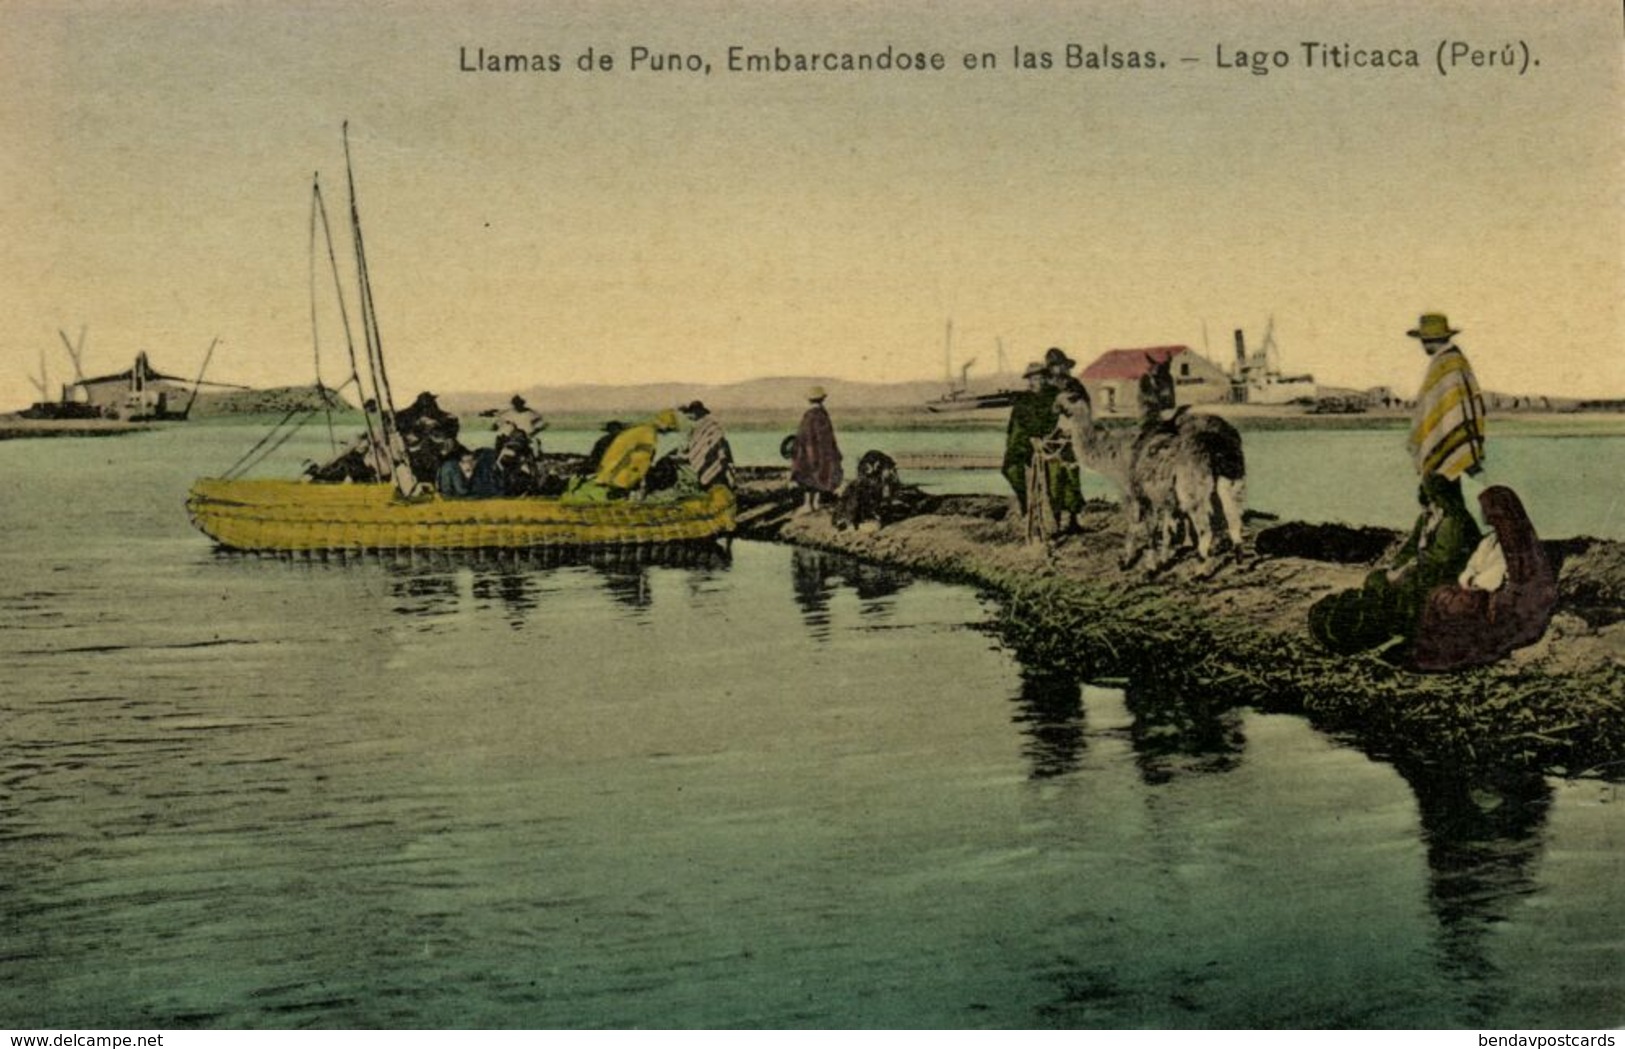 Peru, Lago Titicaca, Llamas De Puno, Embarcandose En Las Balsas (1910s) Postcard - Perú